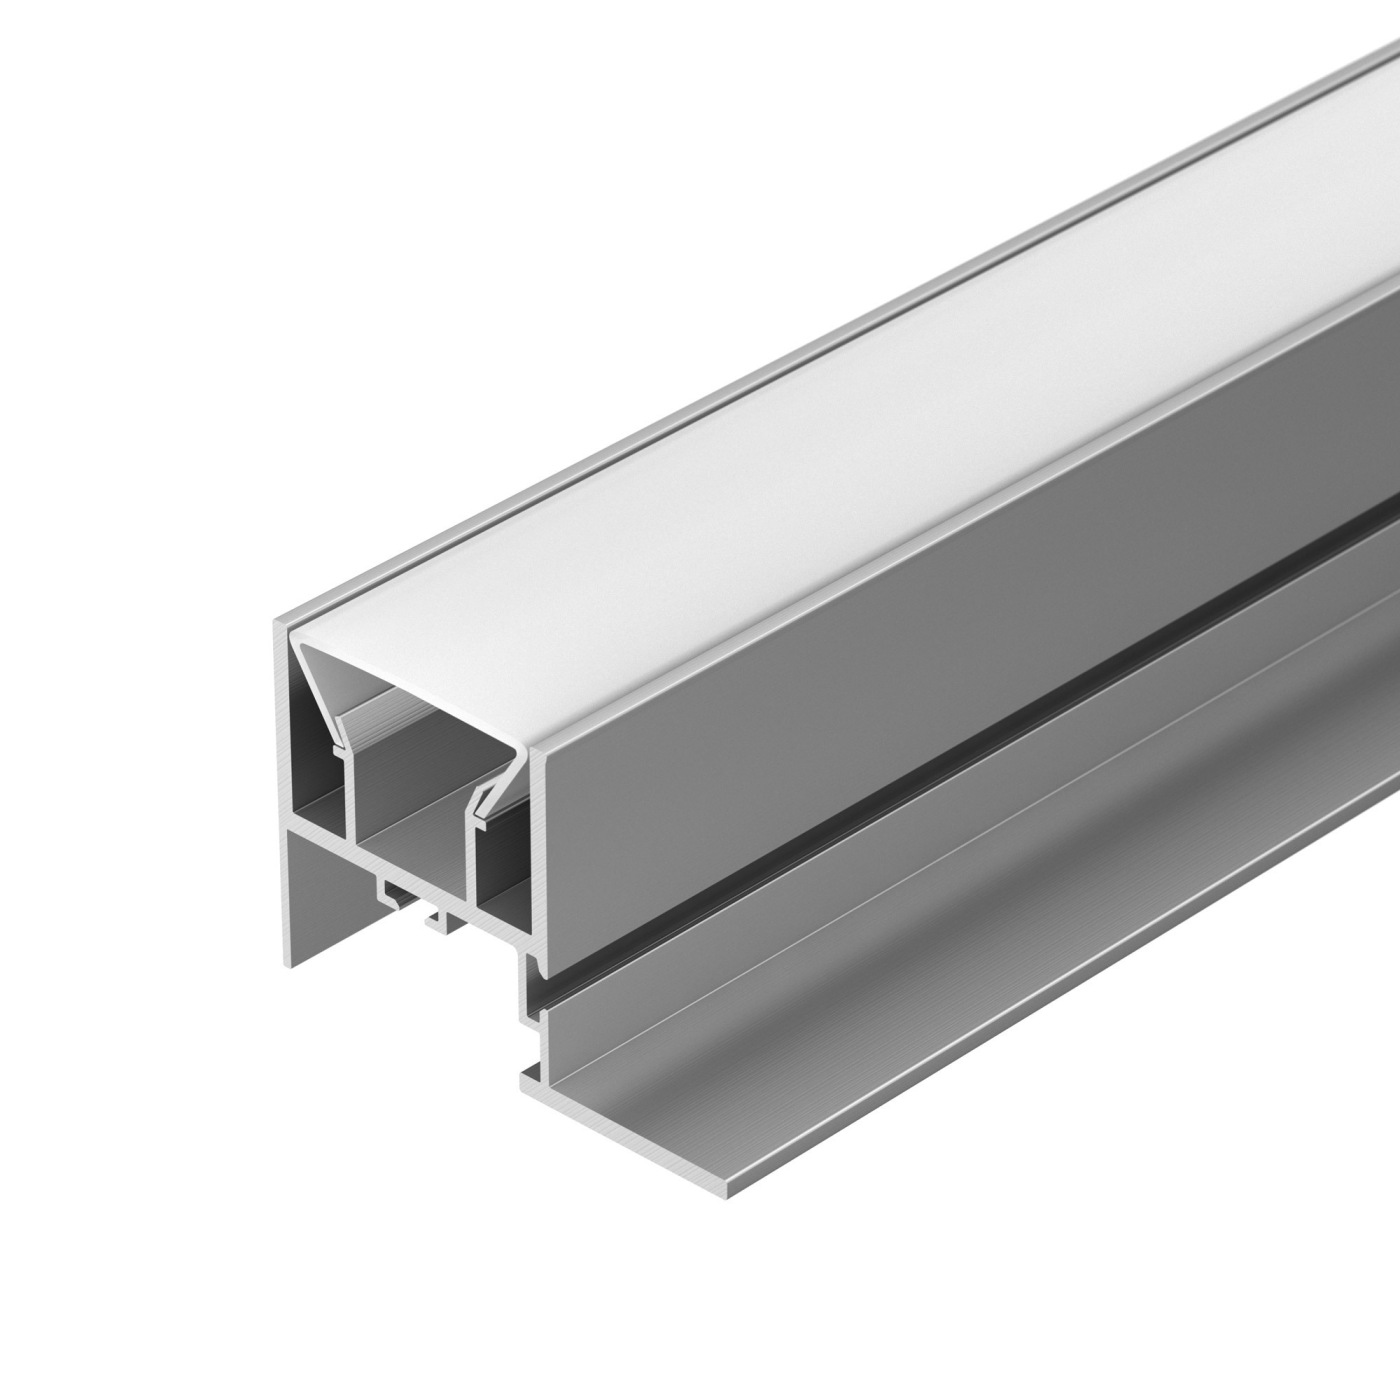 Профиль FOLED-CEIL-SIDE-2000 (Arlight, Алюминий) алюминиевый профиль ниши скрытого монтажа для гкл потолка alm 11681 pl b 2m